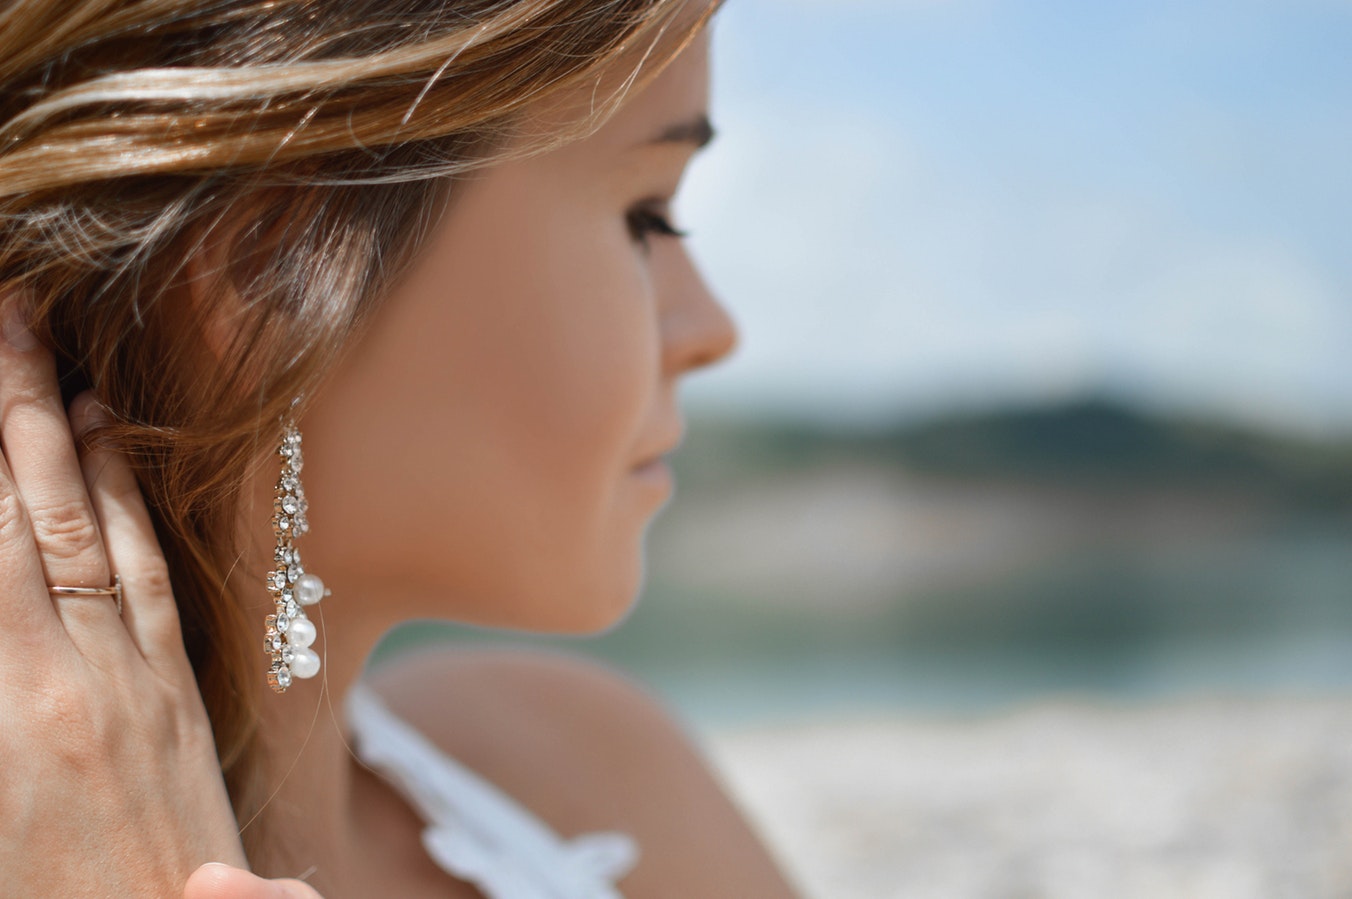 Woman wearing beautiful earrings